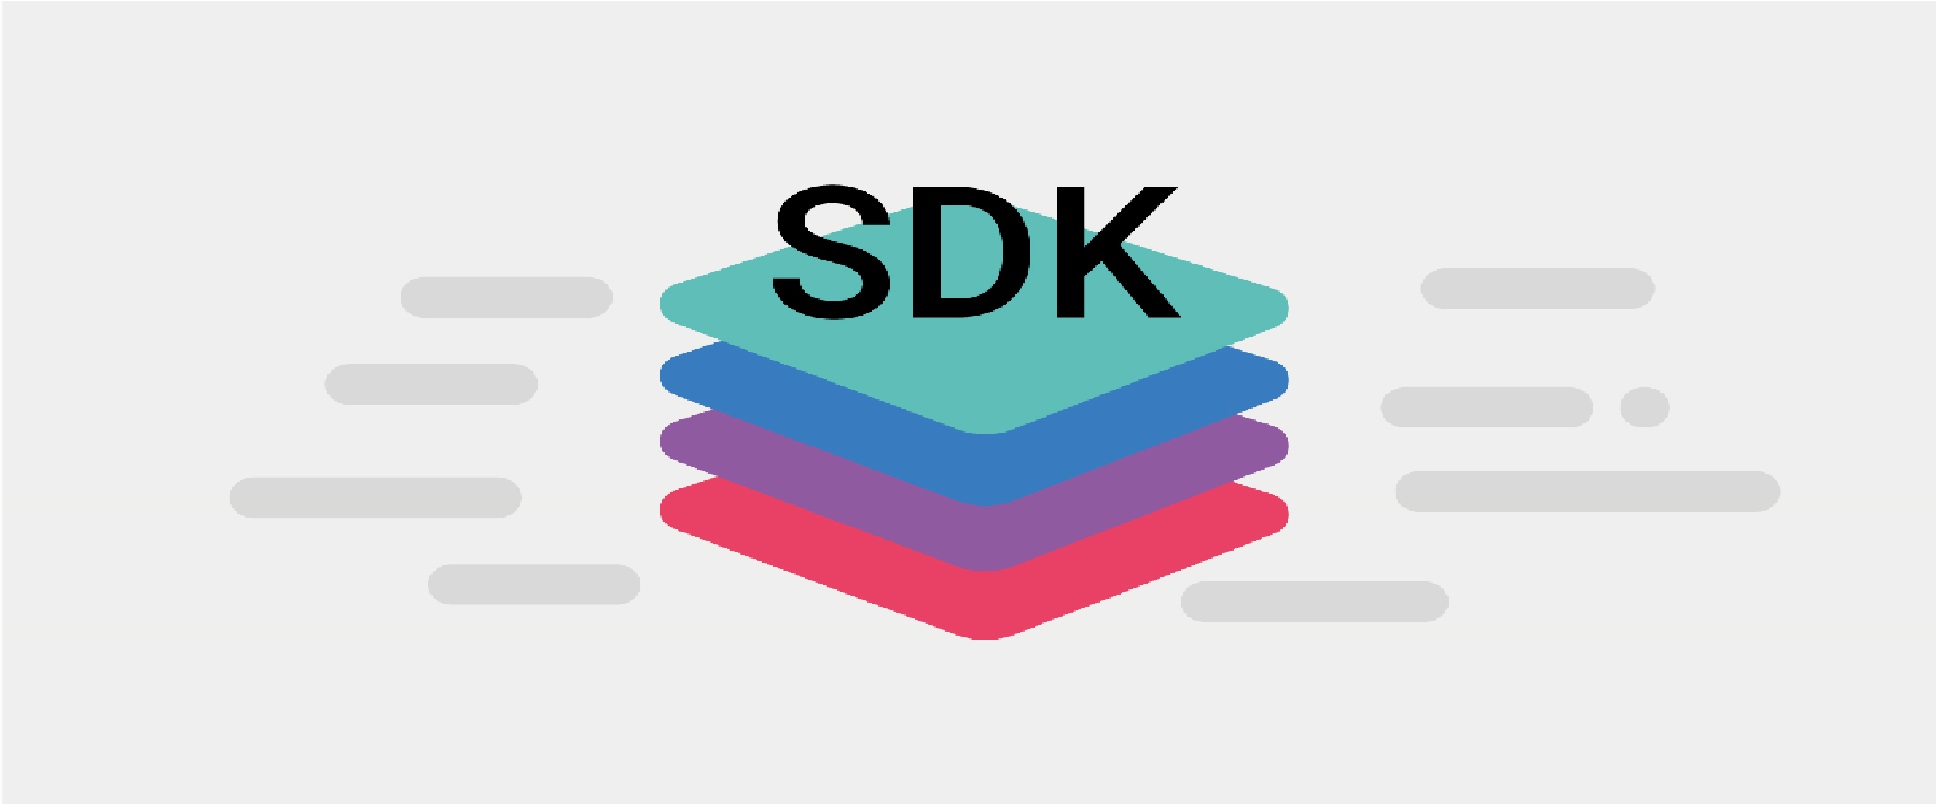 طراحی SDK ها برای mPOS و SDK Android , SDK iOS